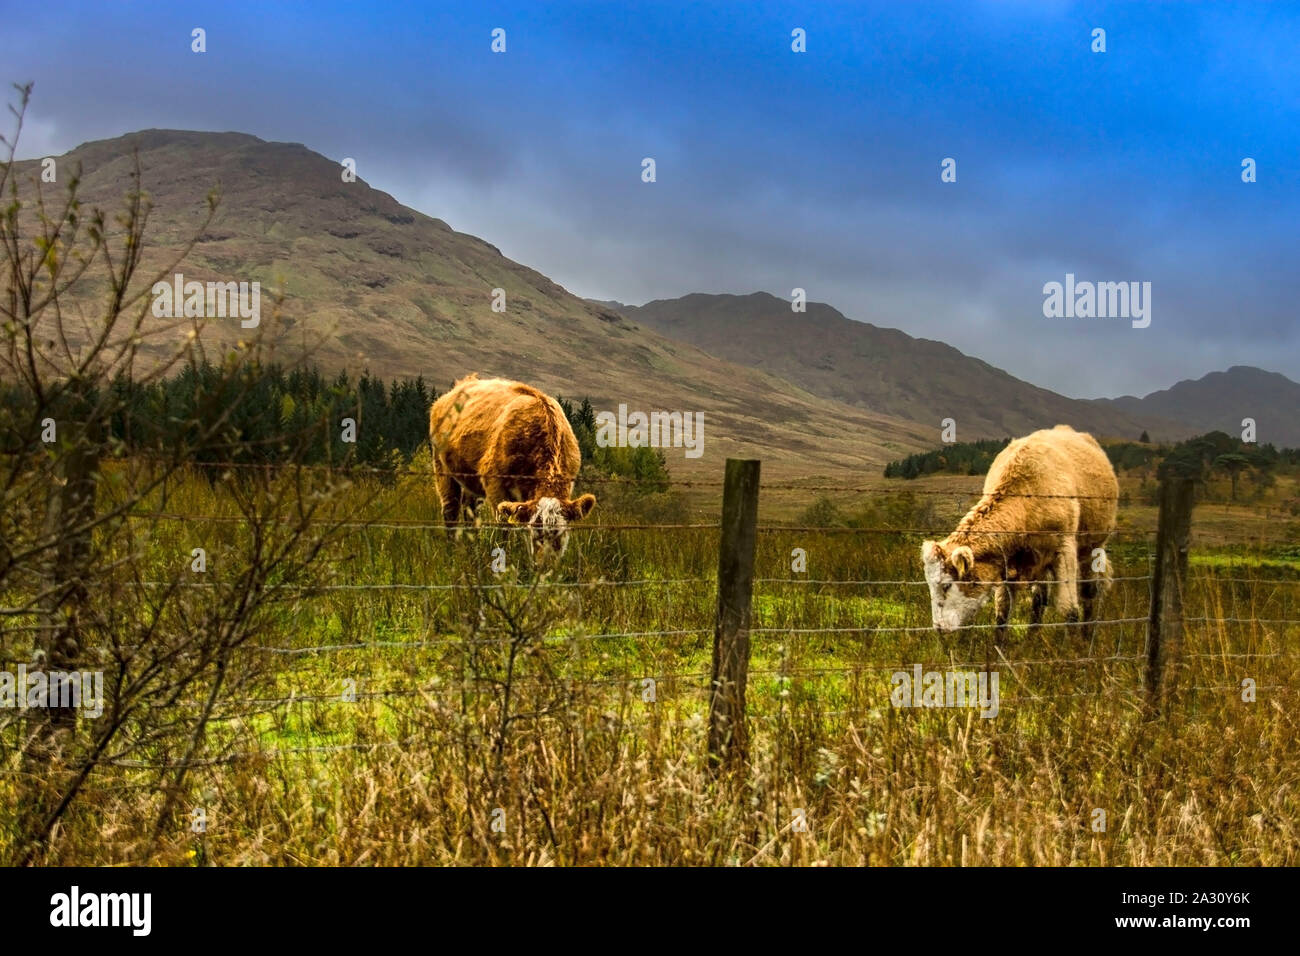 Les vaches sur le terrain dans les montagnes. Scottish Highlands, Ecosse, Royaume-Uni Banque D'Images